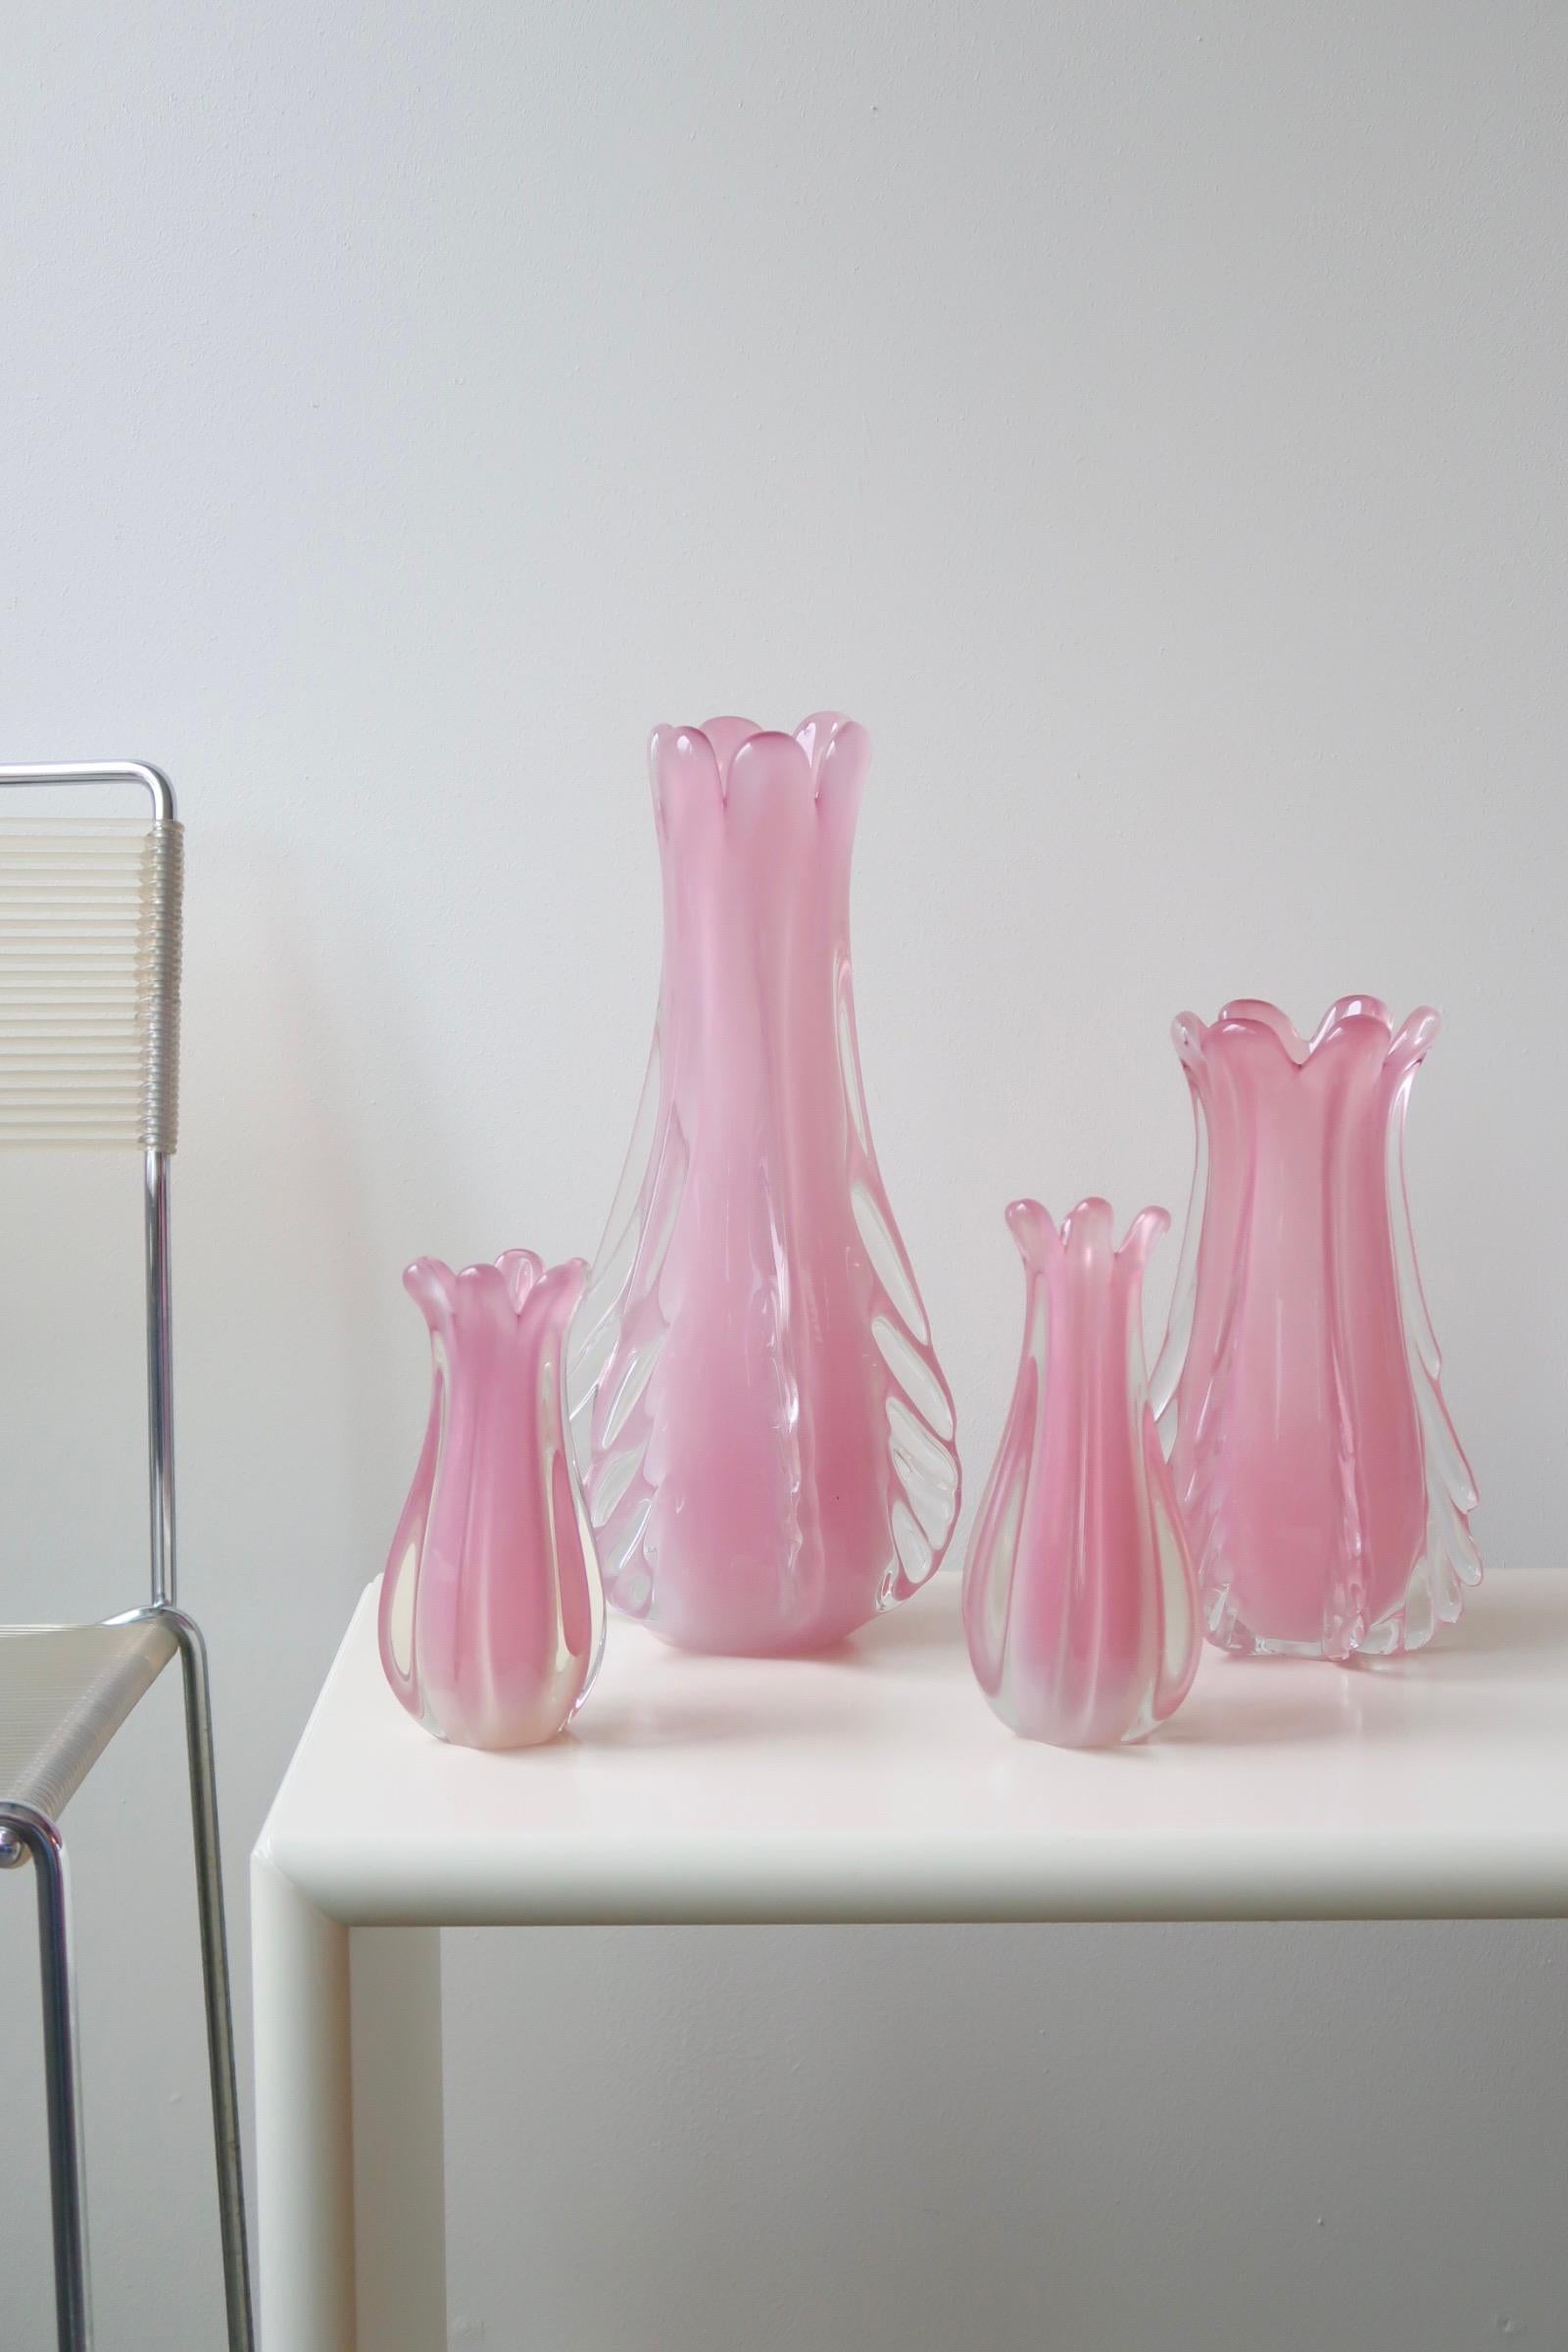 Vintage stor Murano vase i lyserød / pink alabastro glas. Denne glastype er blevet et samleobjekt grundet sjældenhed og den helt fantastiske nuance. Vasen er mundblæst i en organisk form. Håndlavet i Italien, 1950/60erne. 

